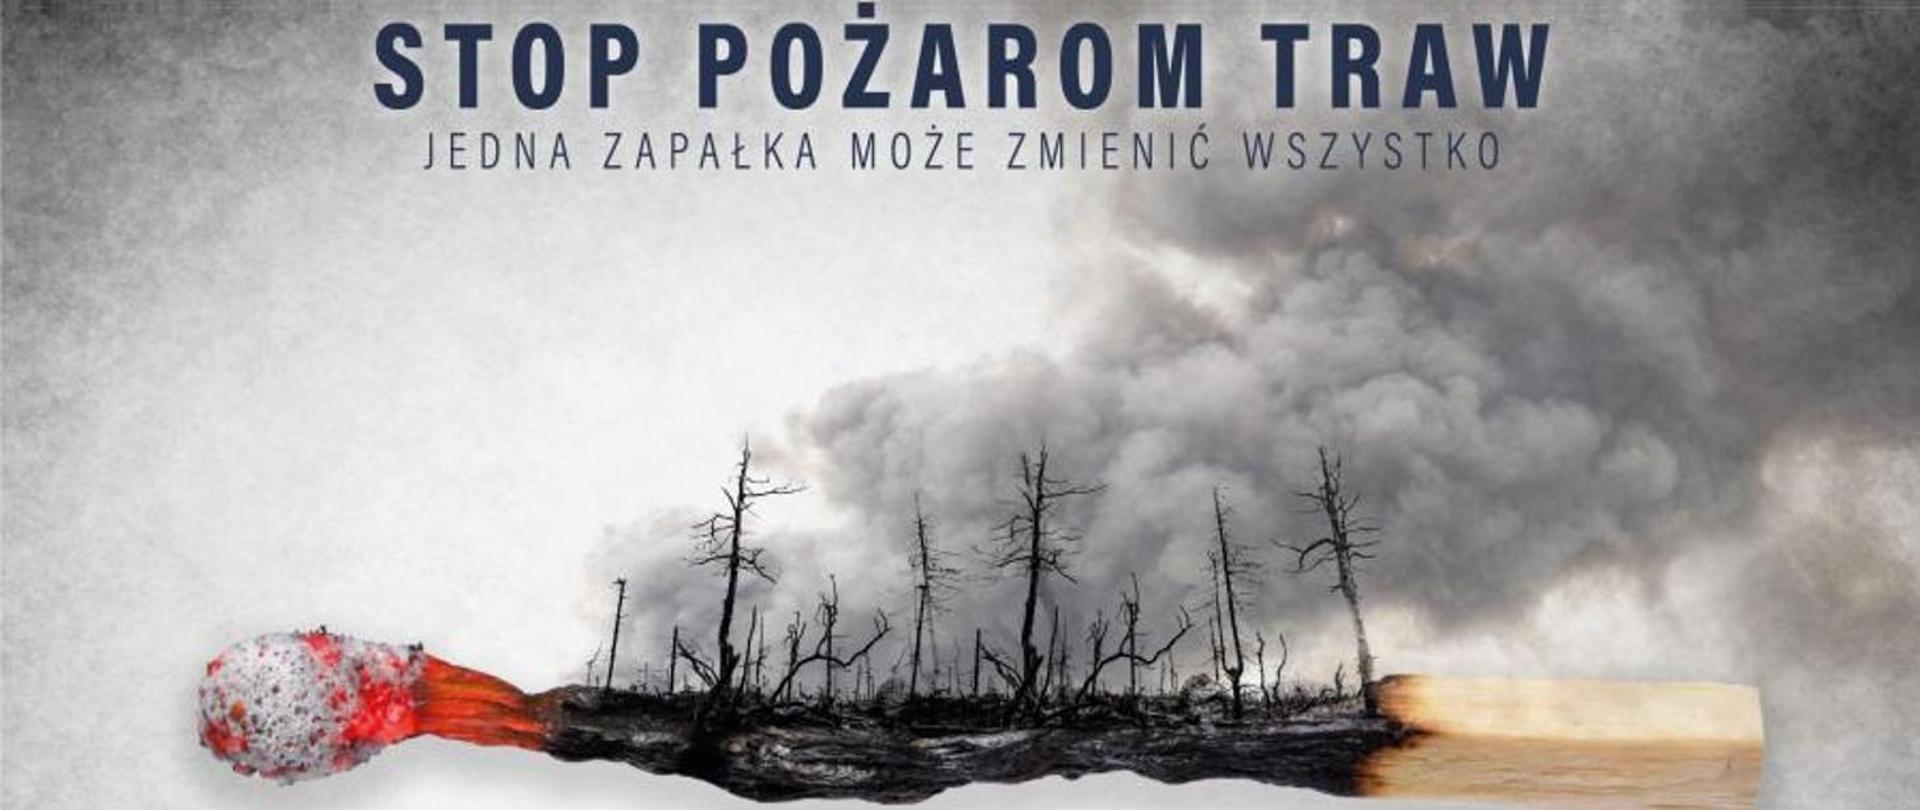 STOP pożarom traw - Komenda Miejska Państwowej Straży Pożarnej w Poznaniu - Portal Gov.pl